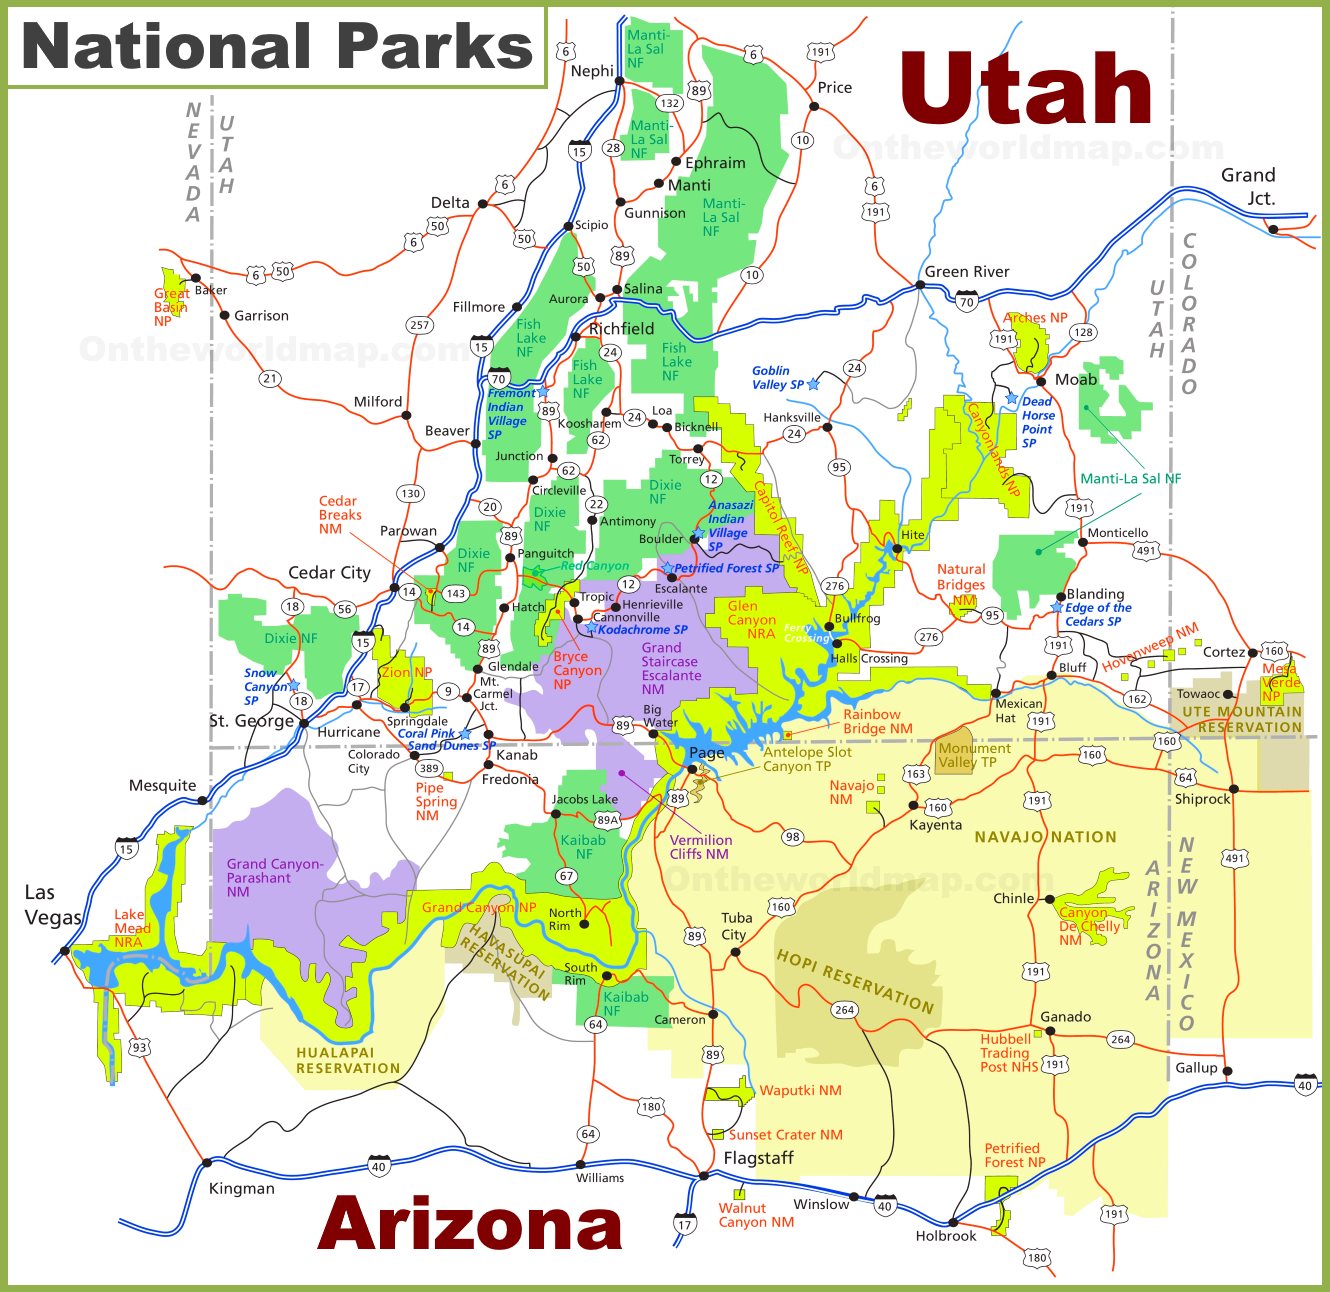 Utah Arizona National Parks Map